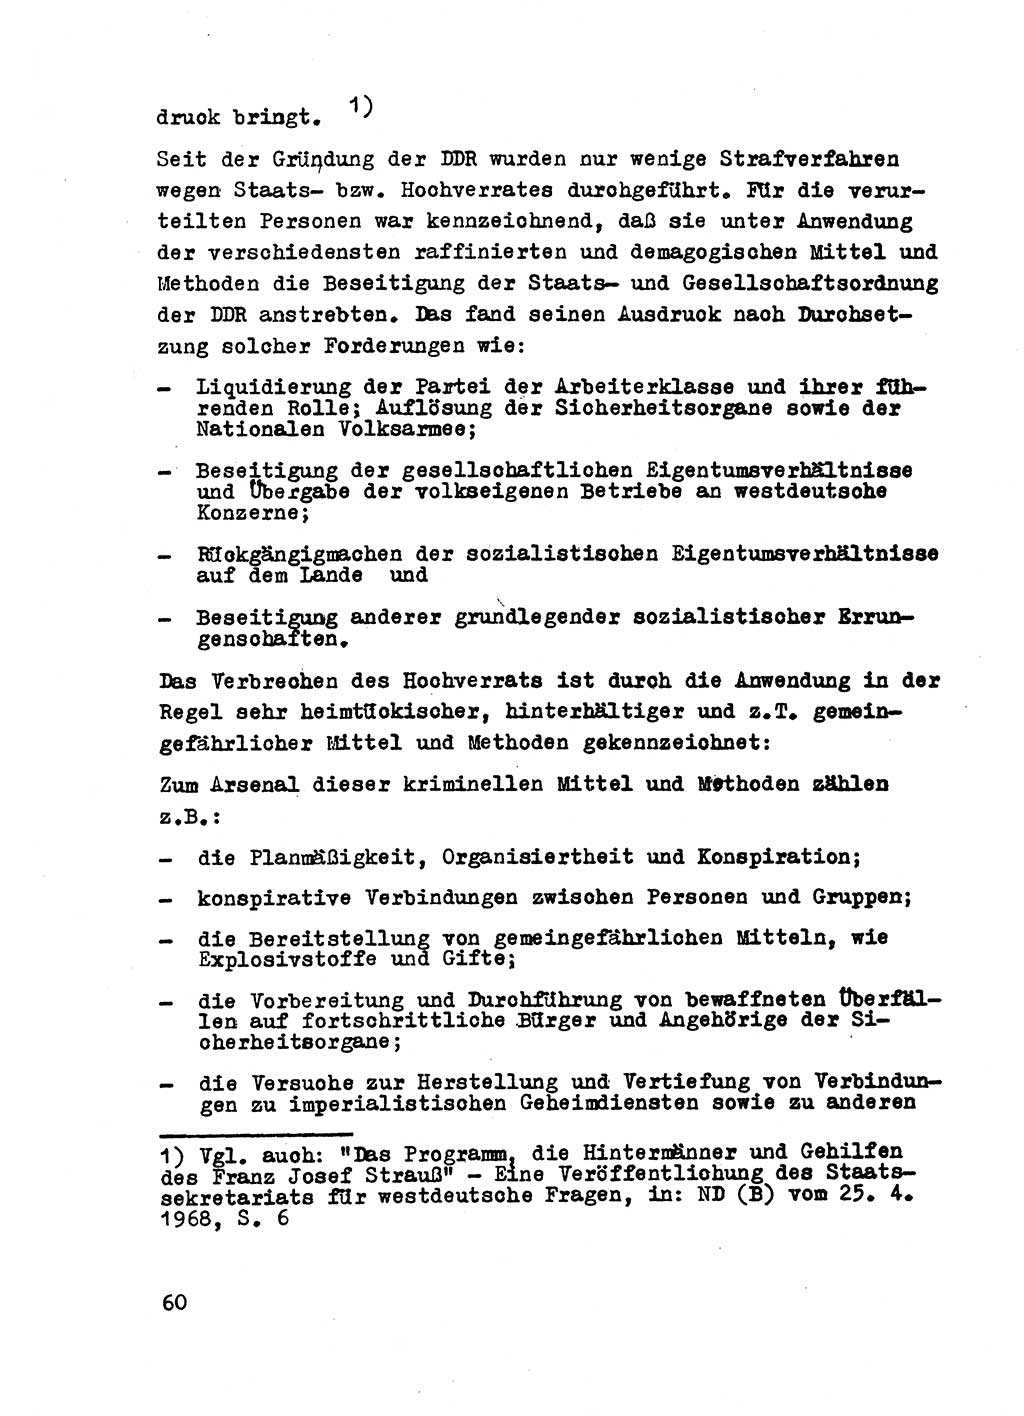 Strafrecht der DDR (Deutsche Demokratische Republik), Besonderer Teil, Lehrmaterial, Heft 2 1969, Seite 60 (Strafr. DDR BT Lehrmat. H. 2 1969, S. 60)